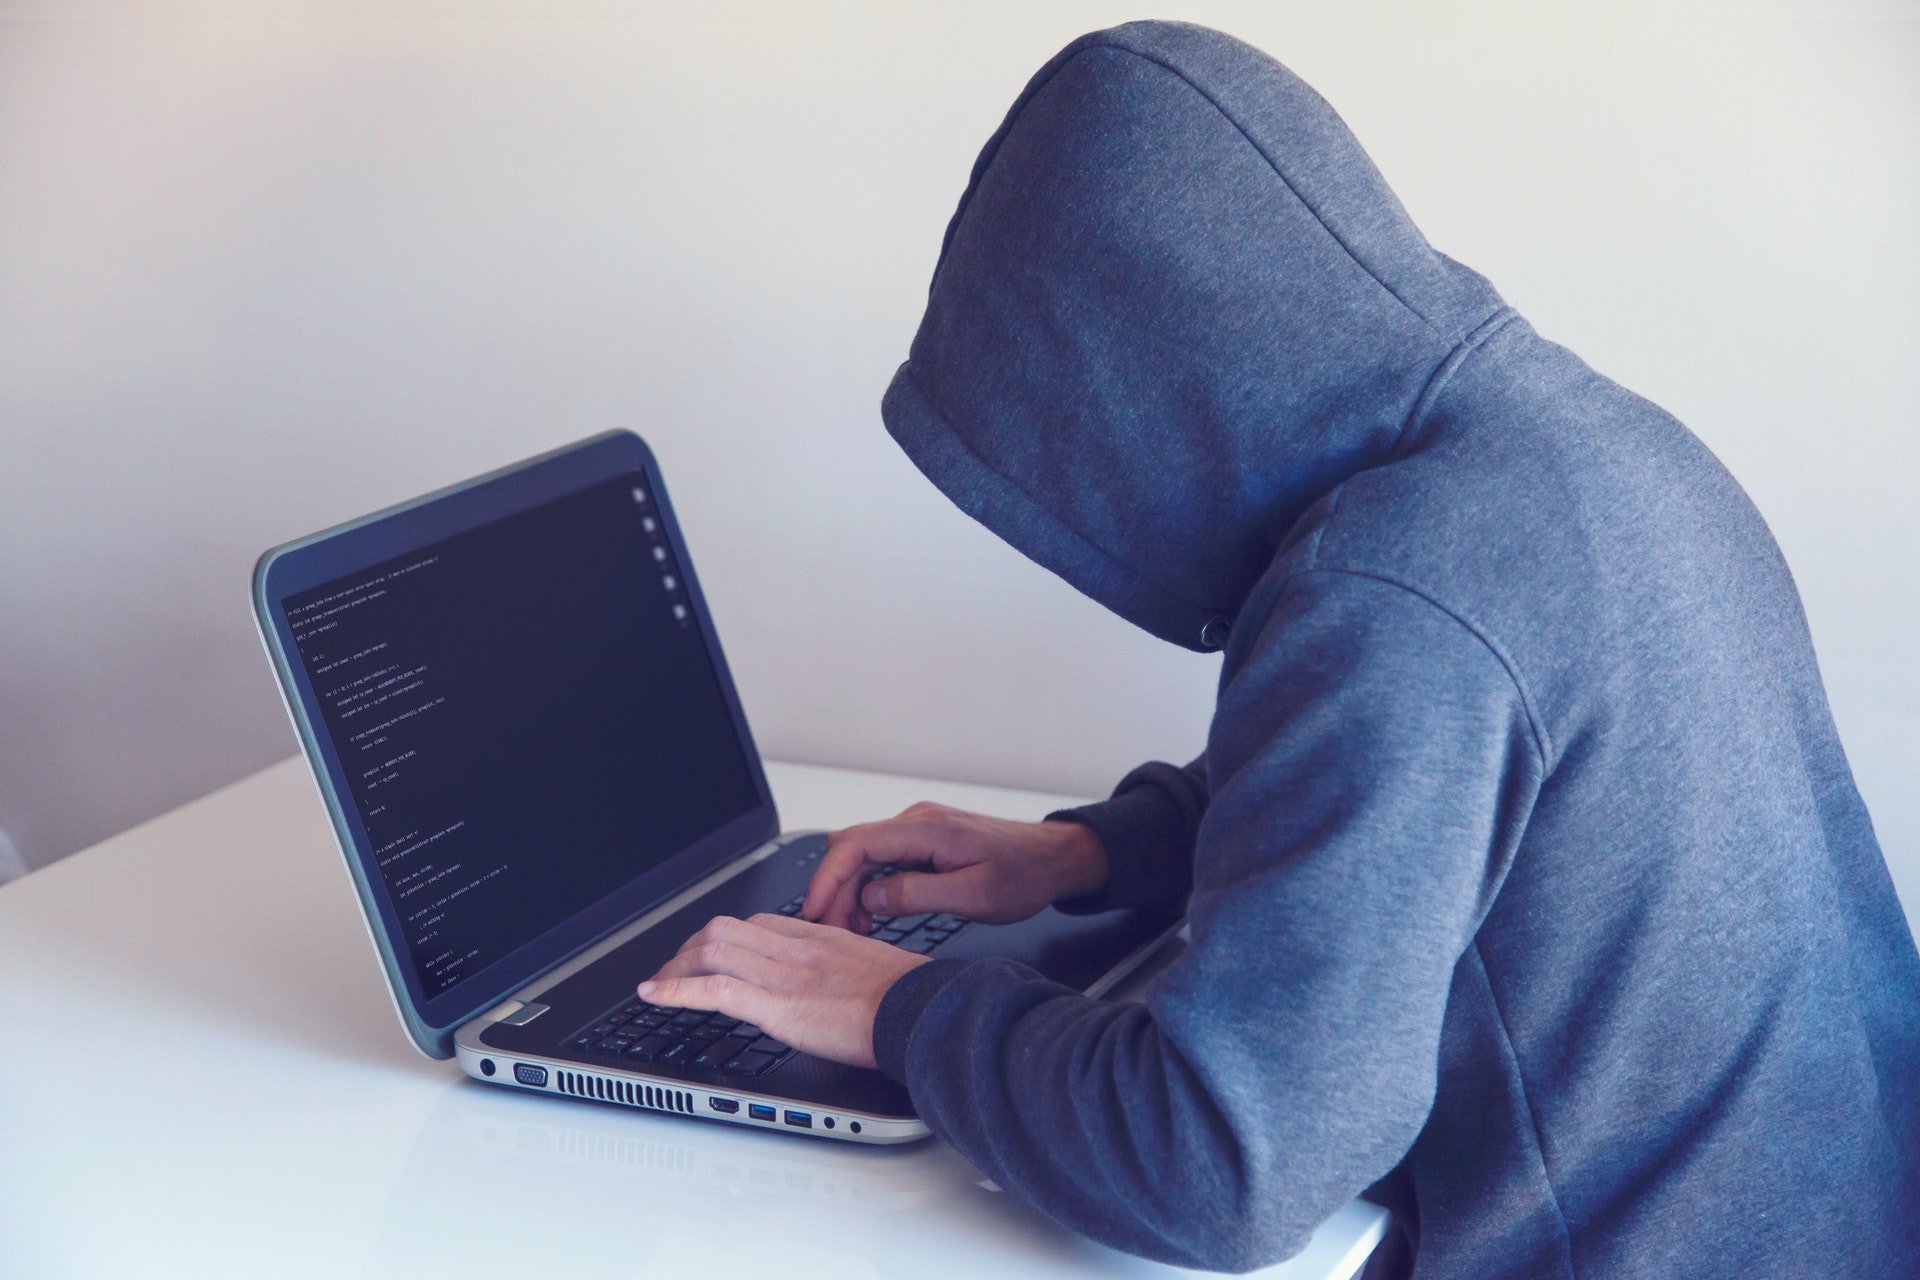 złodziej przestępca haker laptop niebezpieczeństwo bezpieczeństwo w sieci android smartfon